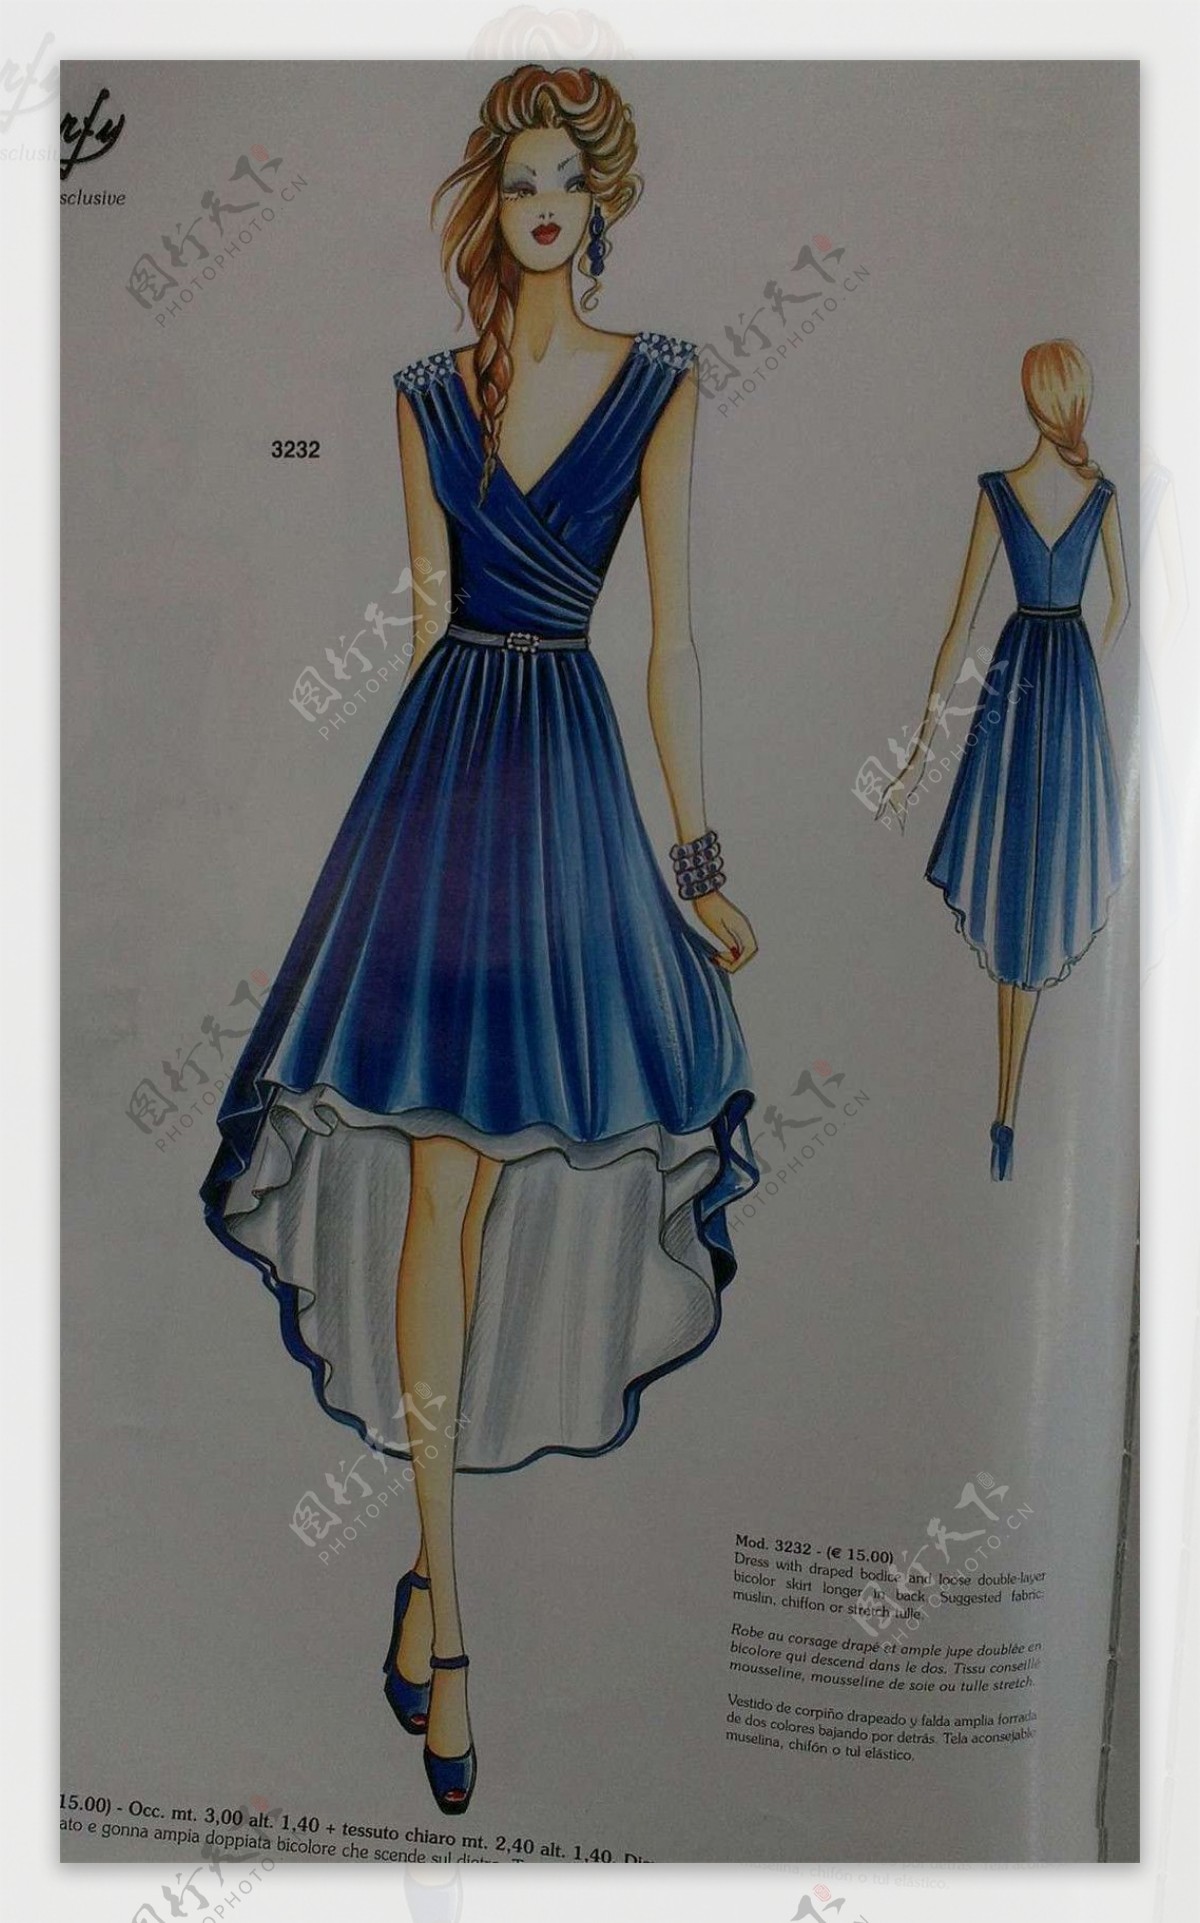 蓝色深V连衣裙设计图